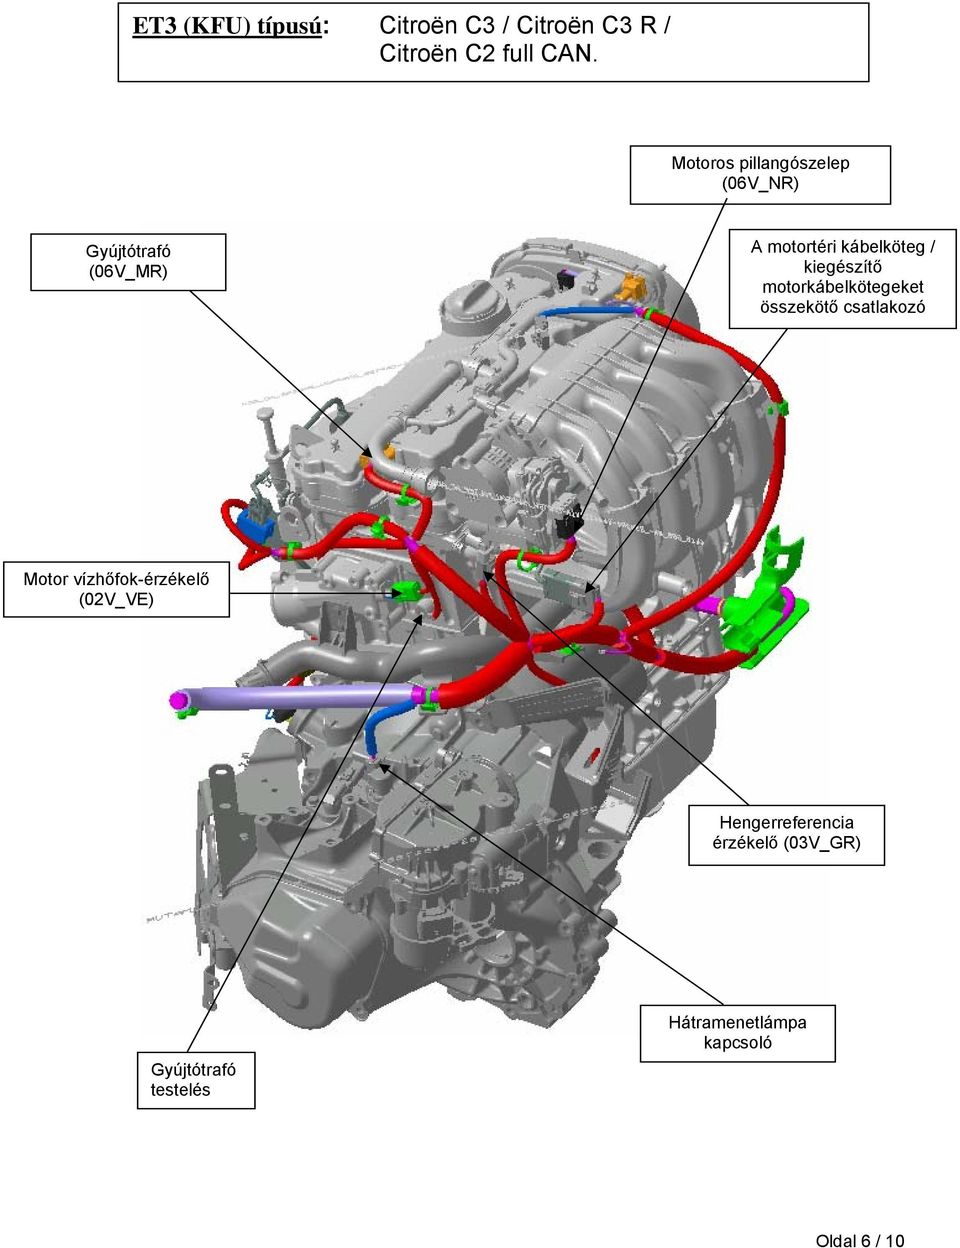 kiegészítő motorkábelkötegeket összekötő csatlakozó Motor vízhőfok-érzékelő